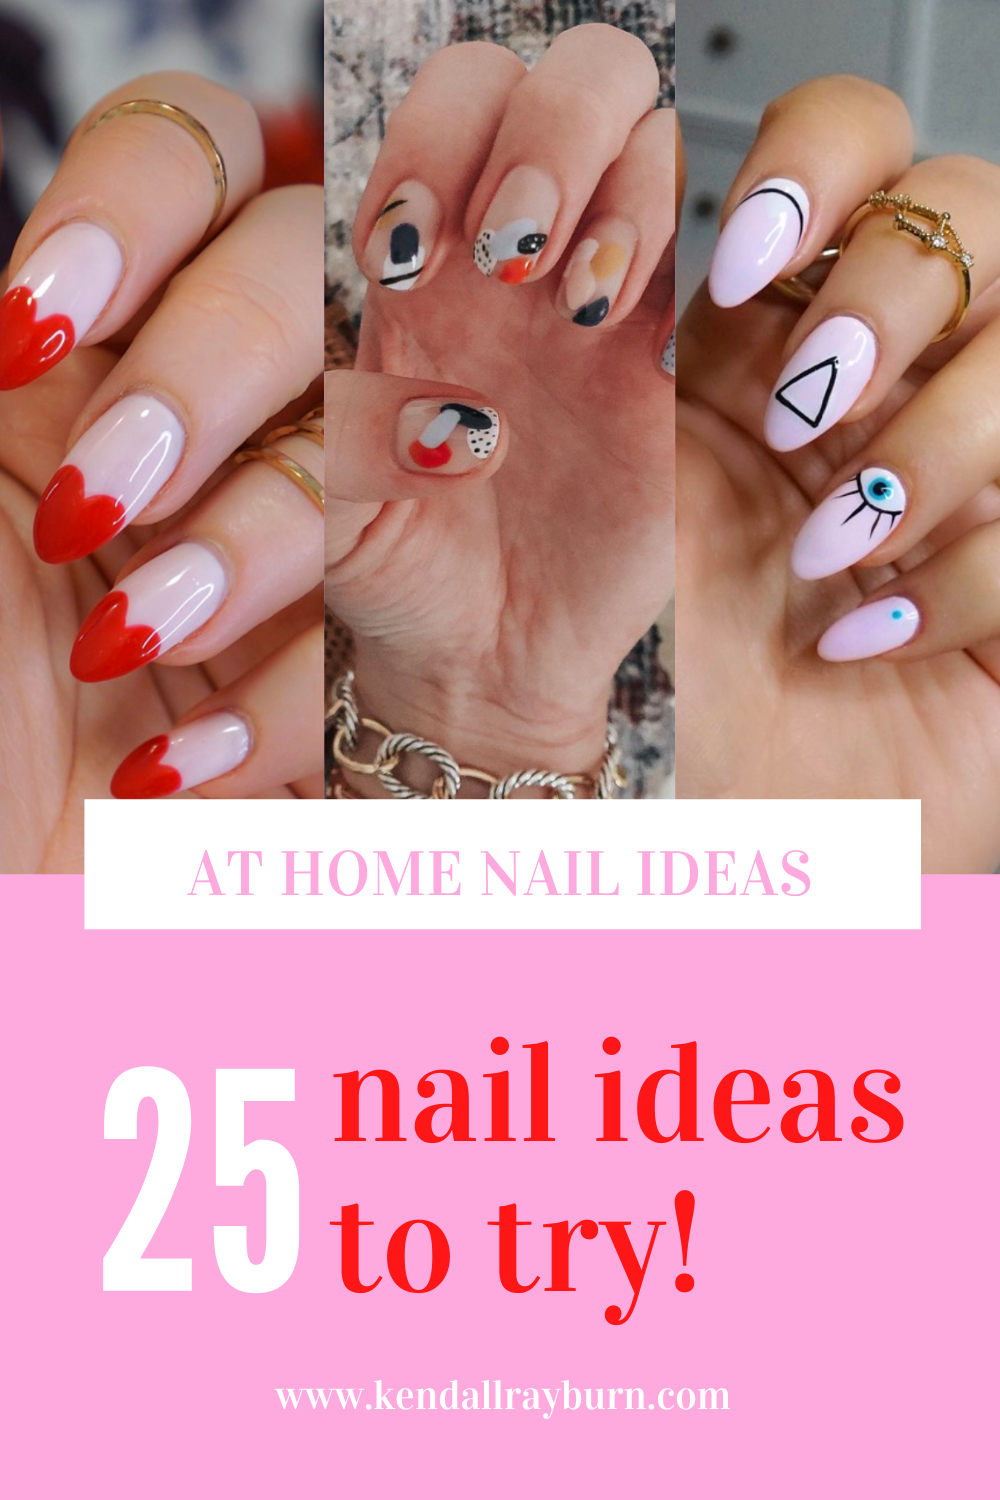 25 At Home Nail Ideas